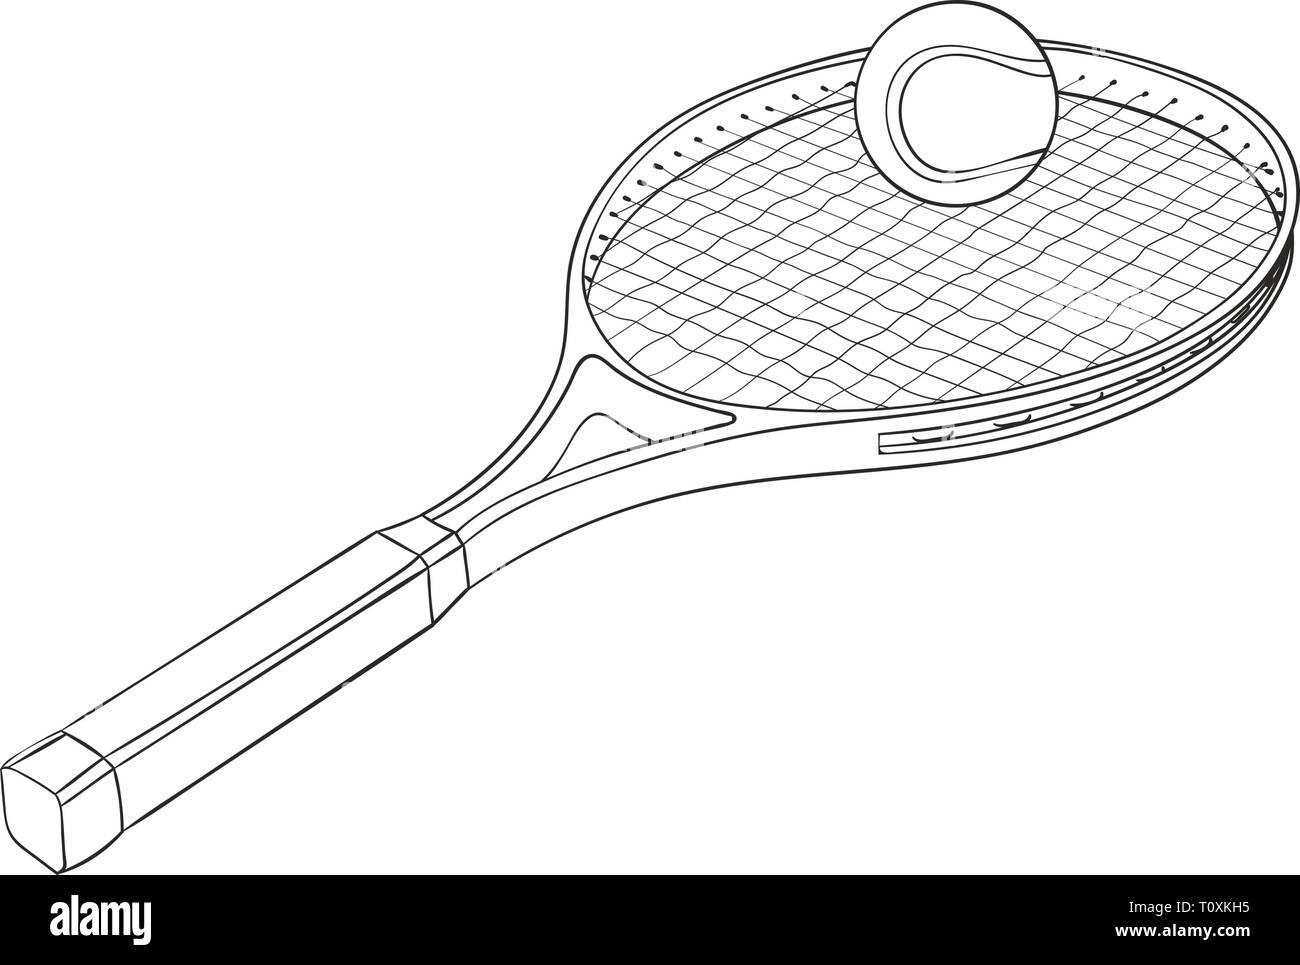 Raquette de tennis avec une balle. Croquis dessinés à la main, Illustration de Vecteur